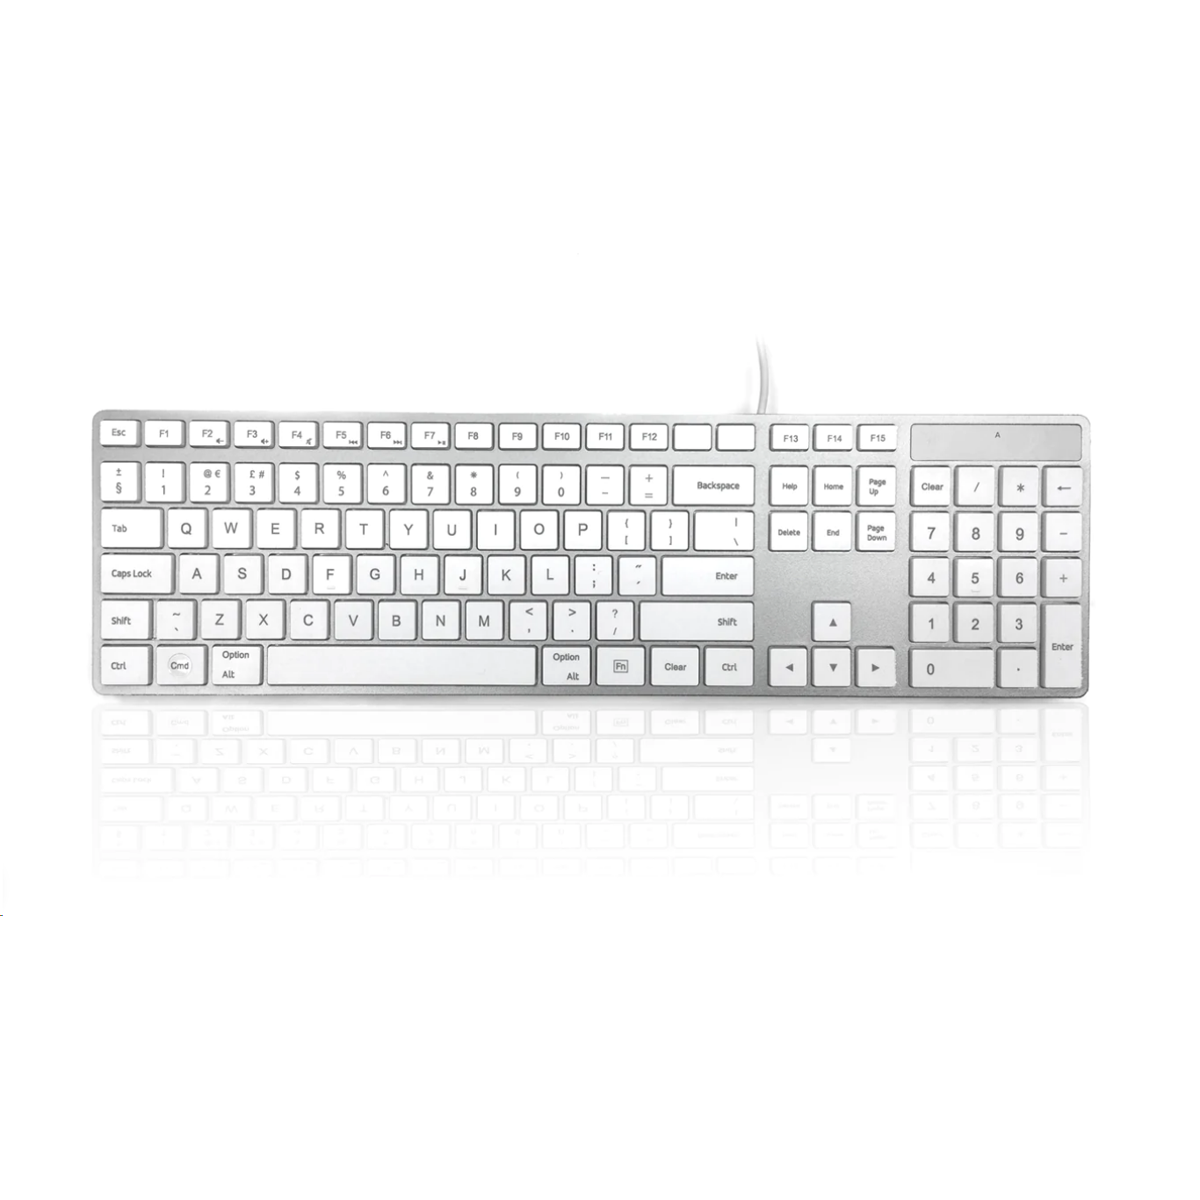 MAC 100 Super Slim Keyboard